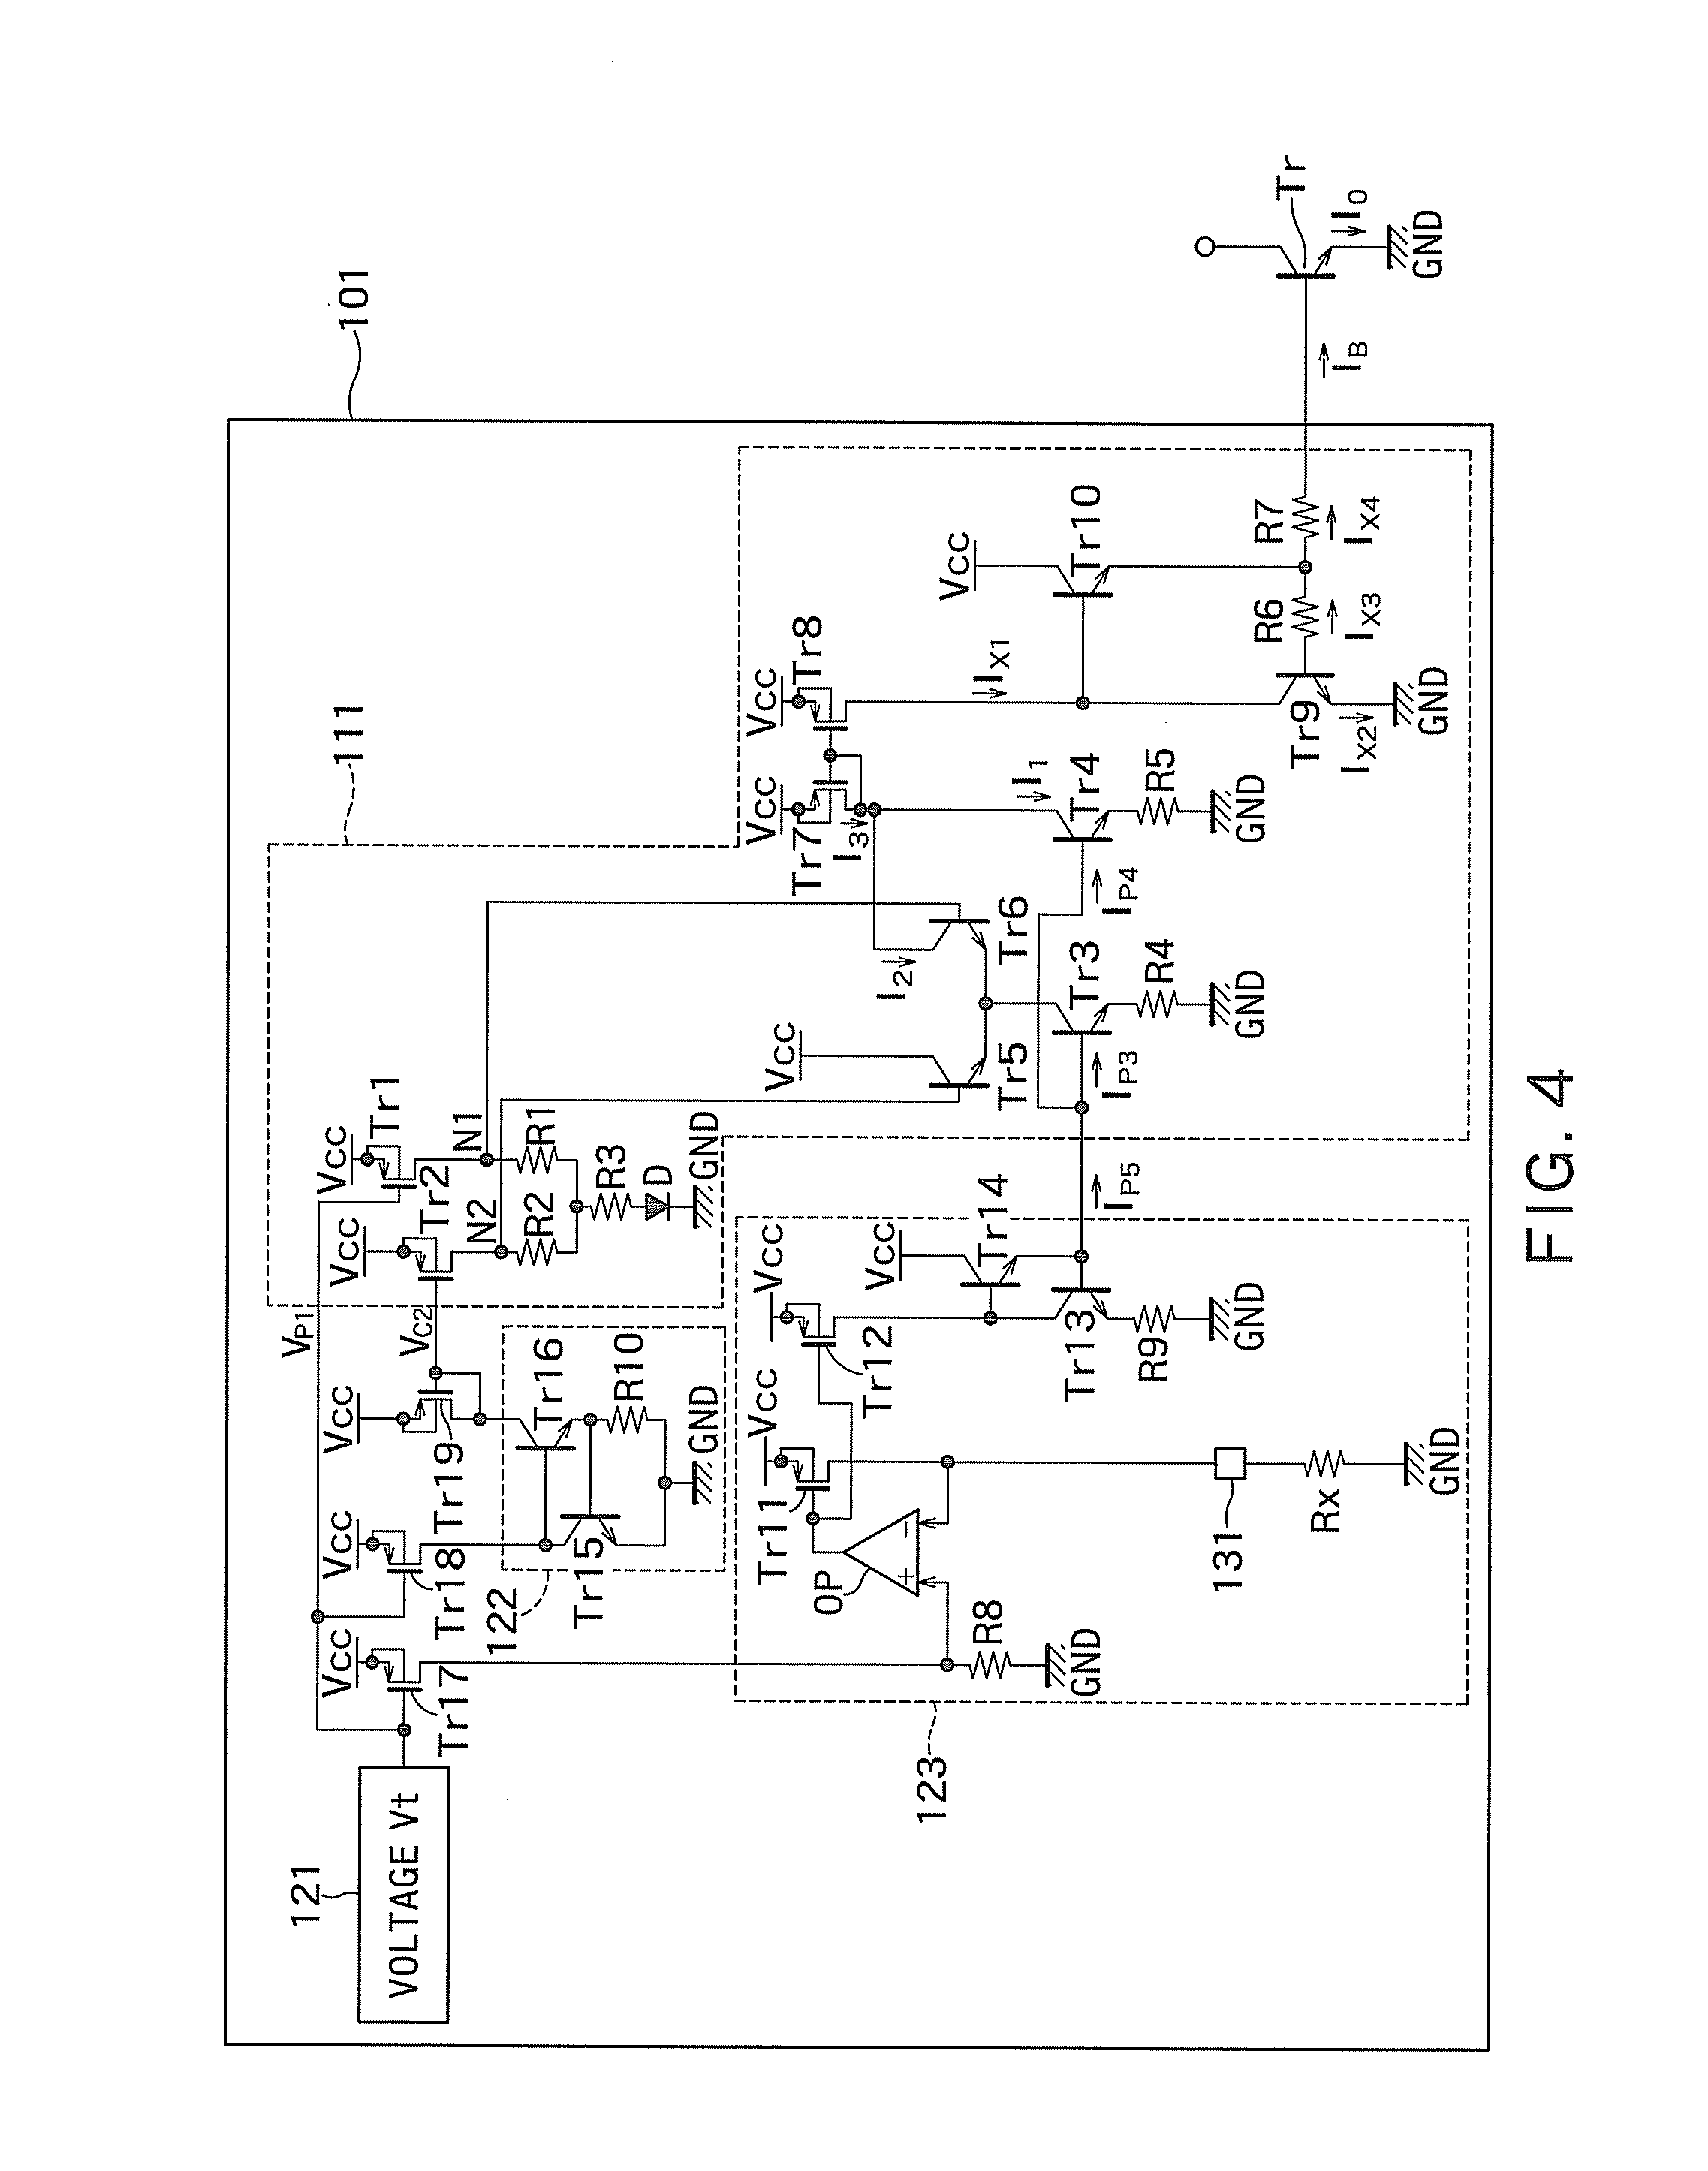 Temperature compensation circuit